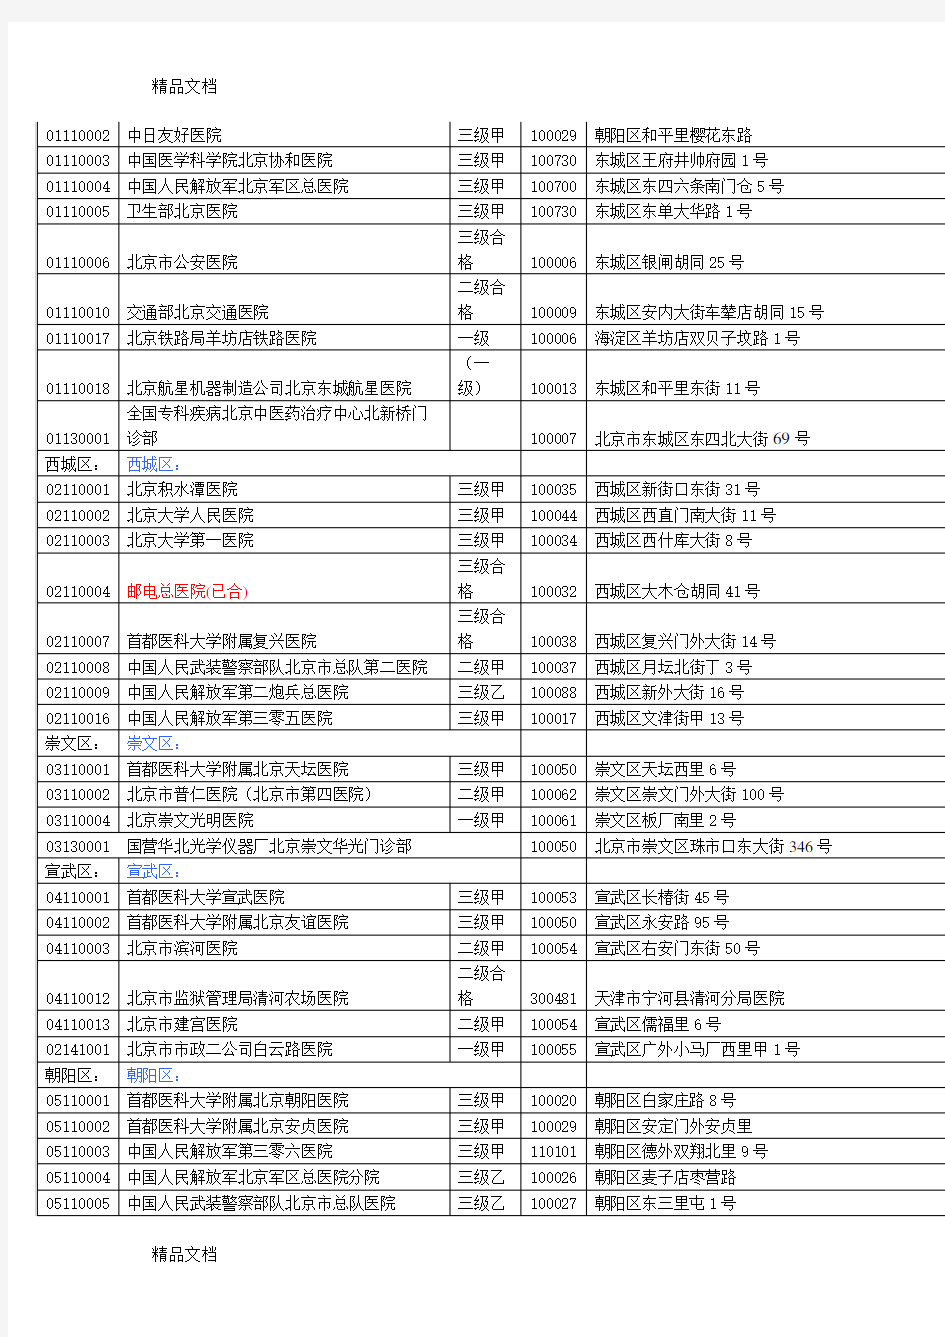 (整理)北京市共有19家A类医院.